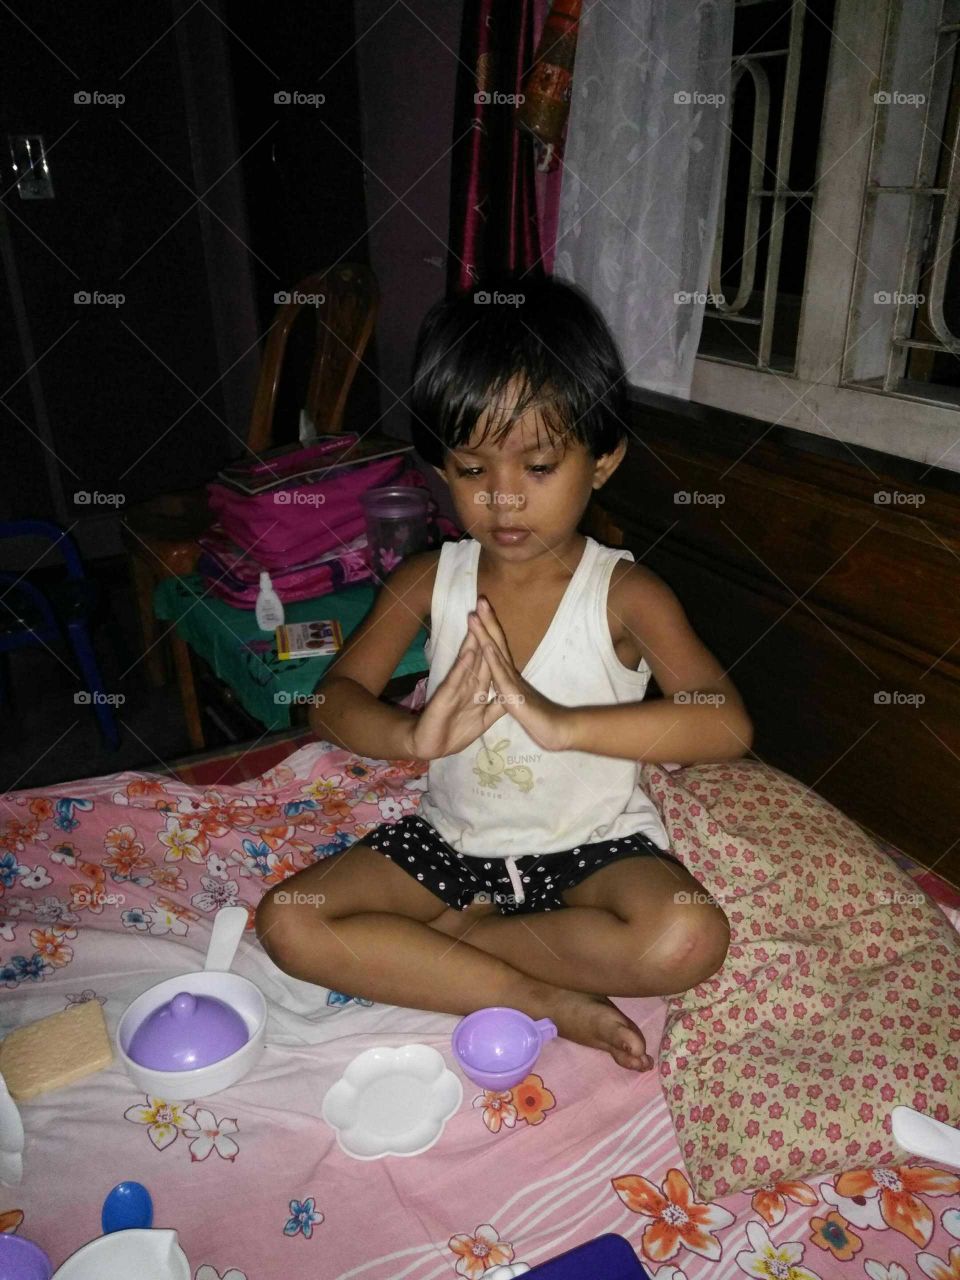 Meditation by a child